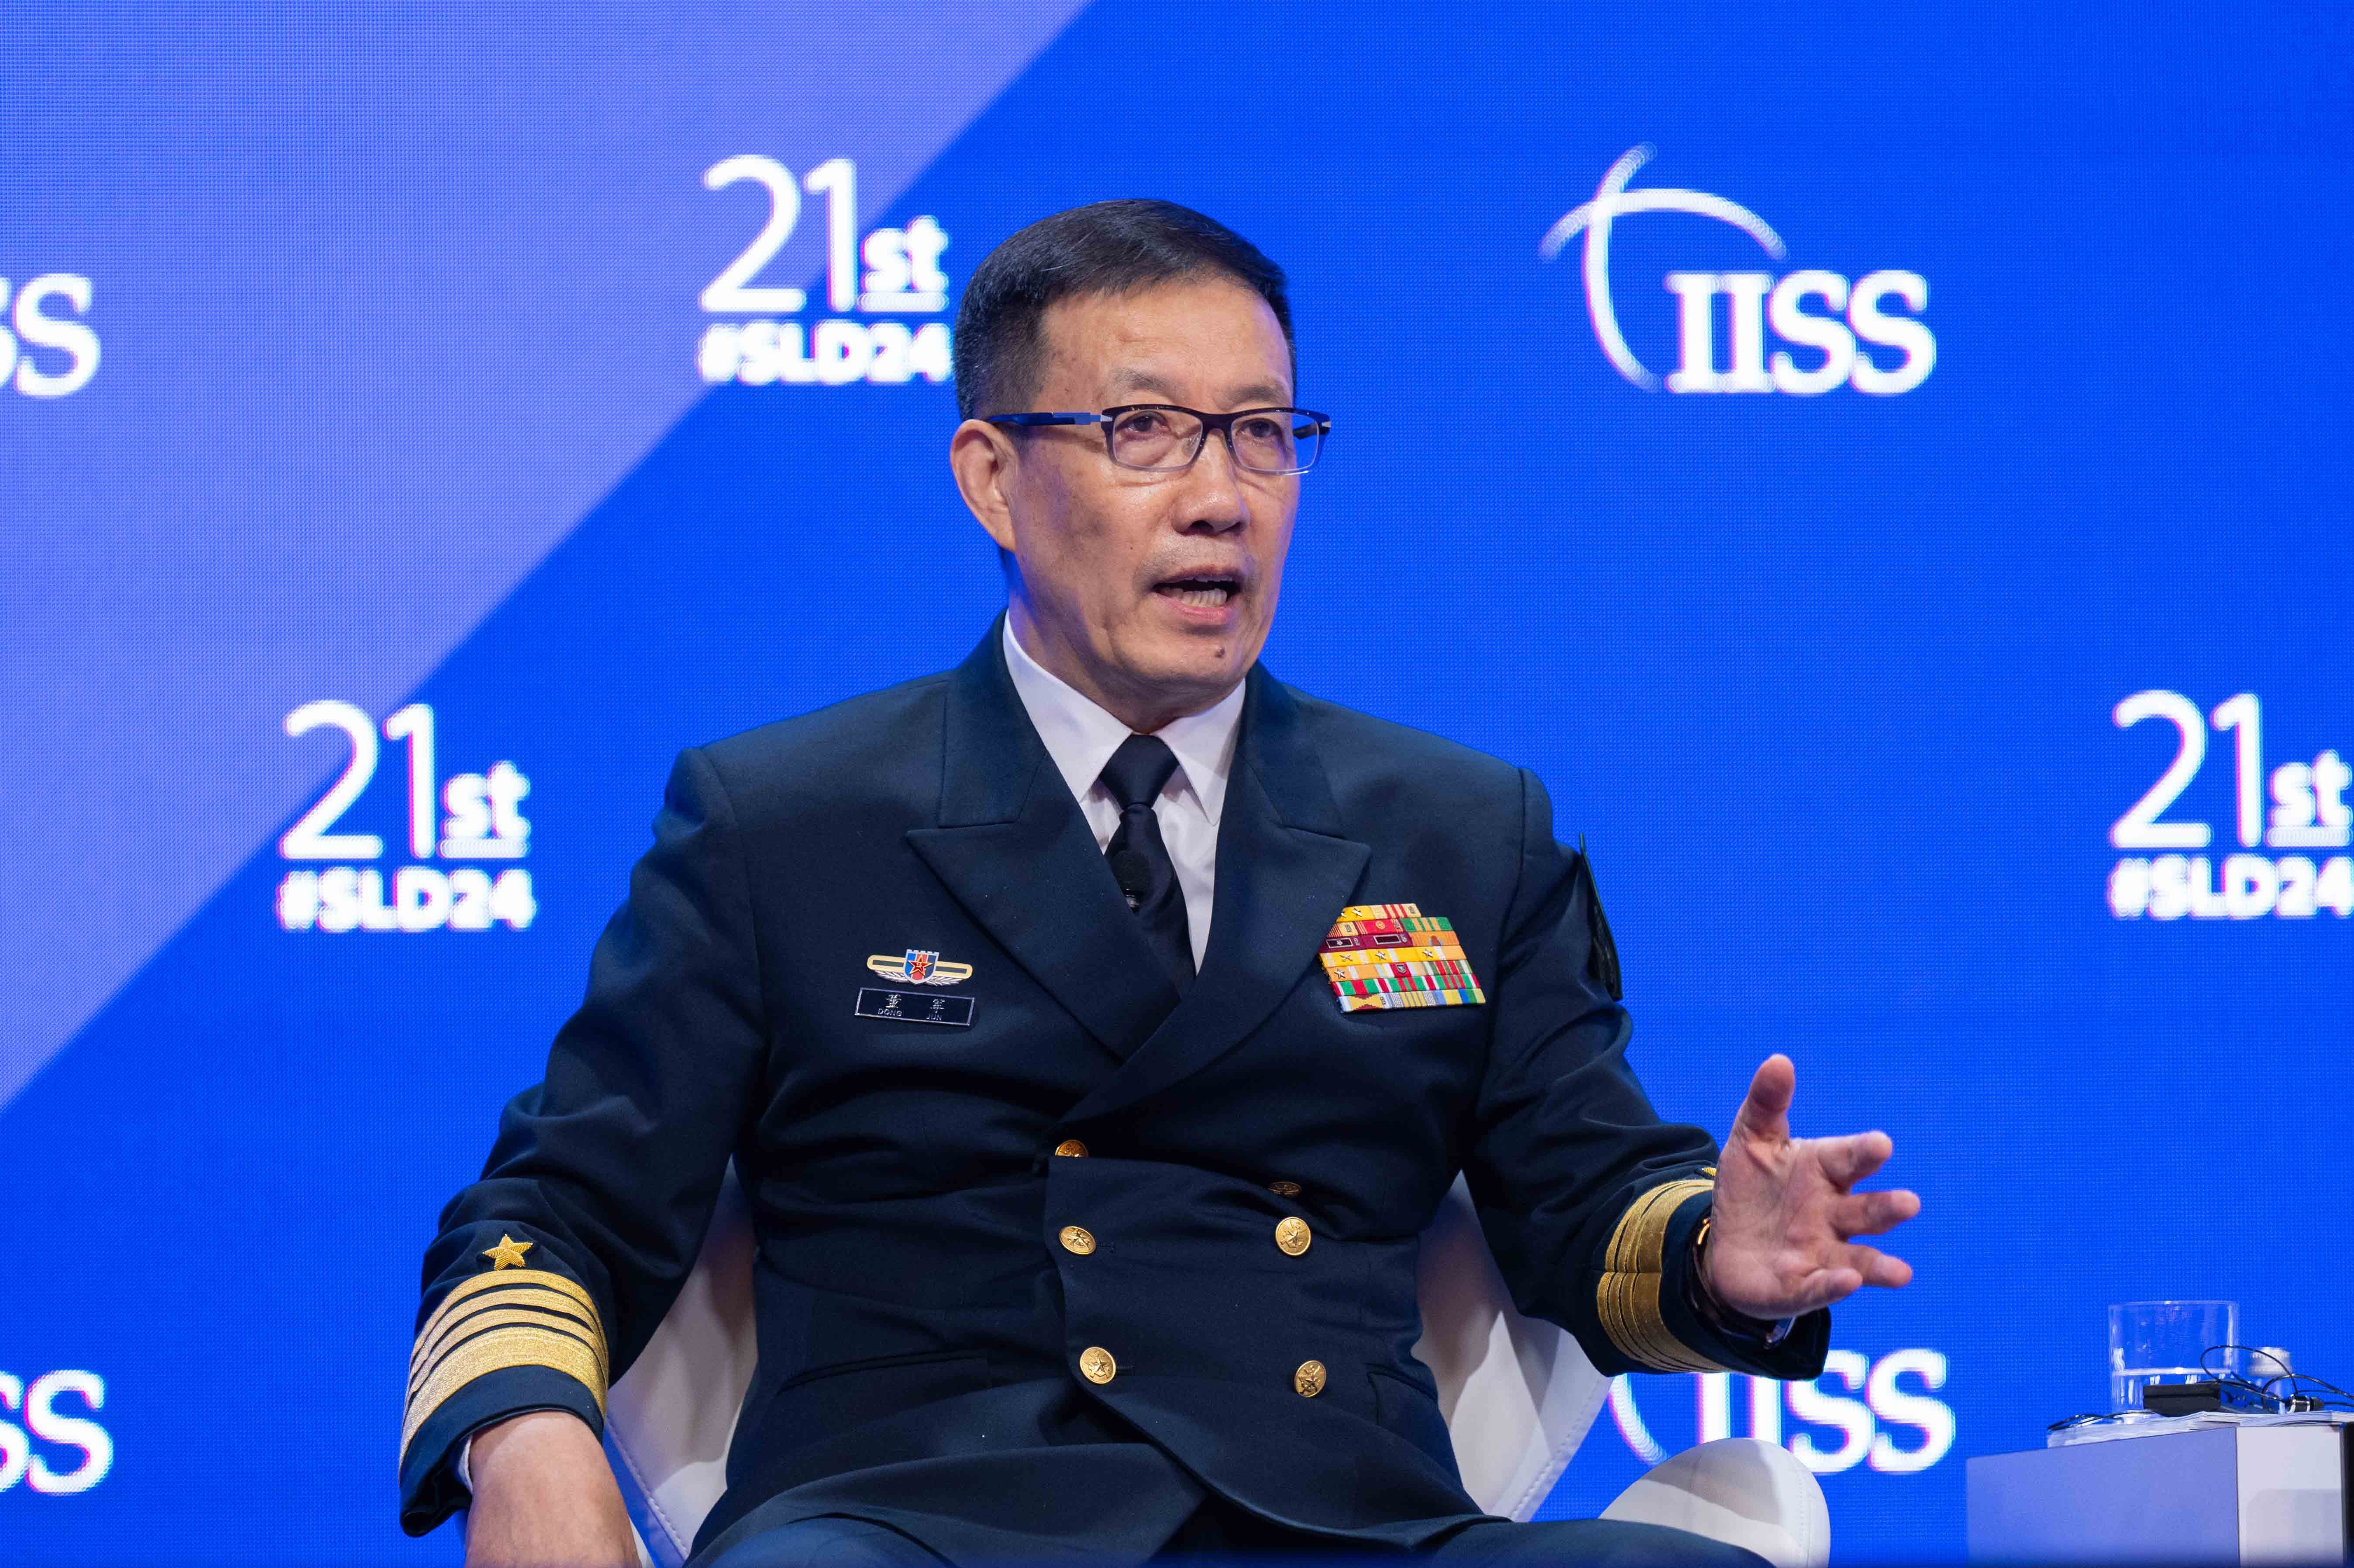 ونفى وزير الدفاع الصيني الأدميرال دونغ جون، في نفس المؤتمر الصحفي الذي عقده زيلينسكي، دعم بكين للمجهود الحربي الروسي.